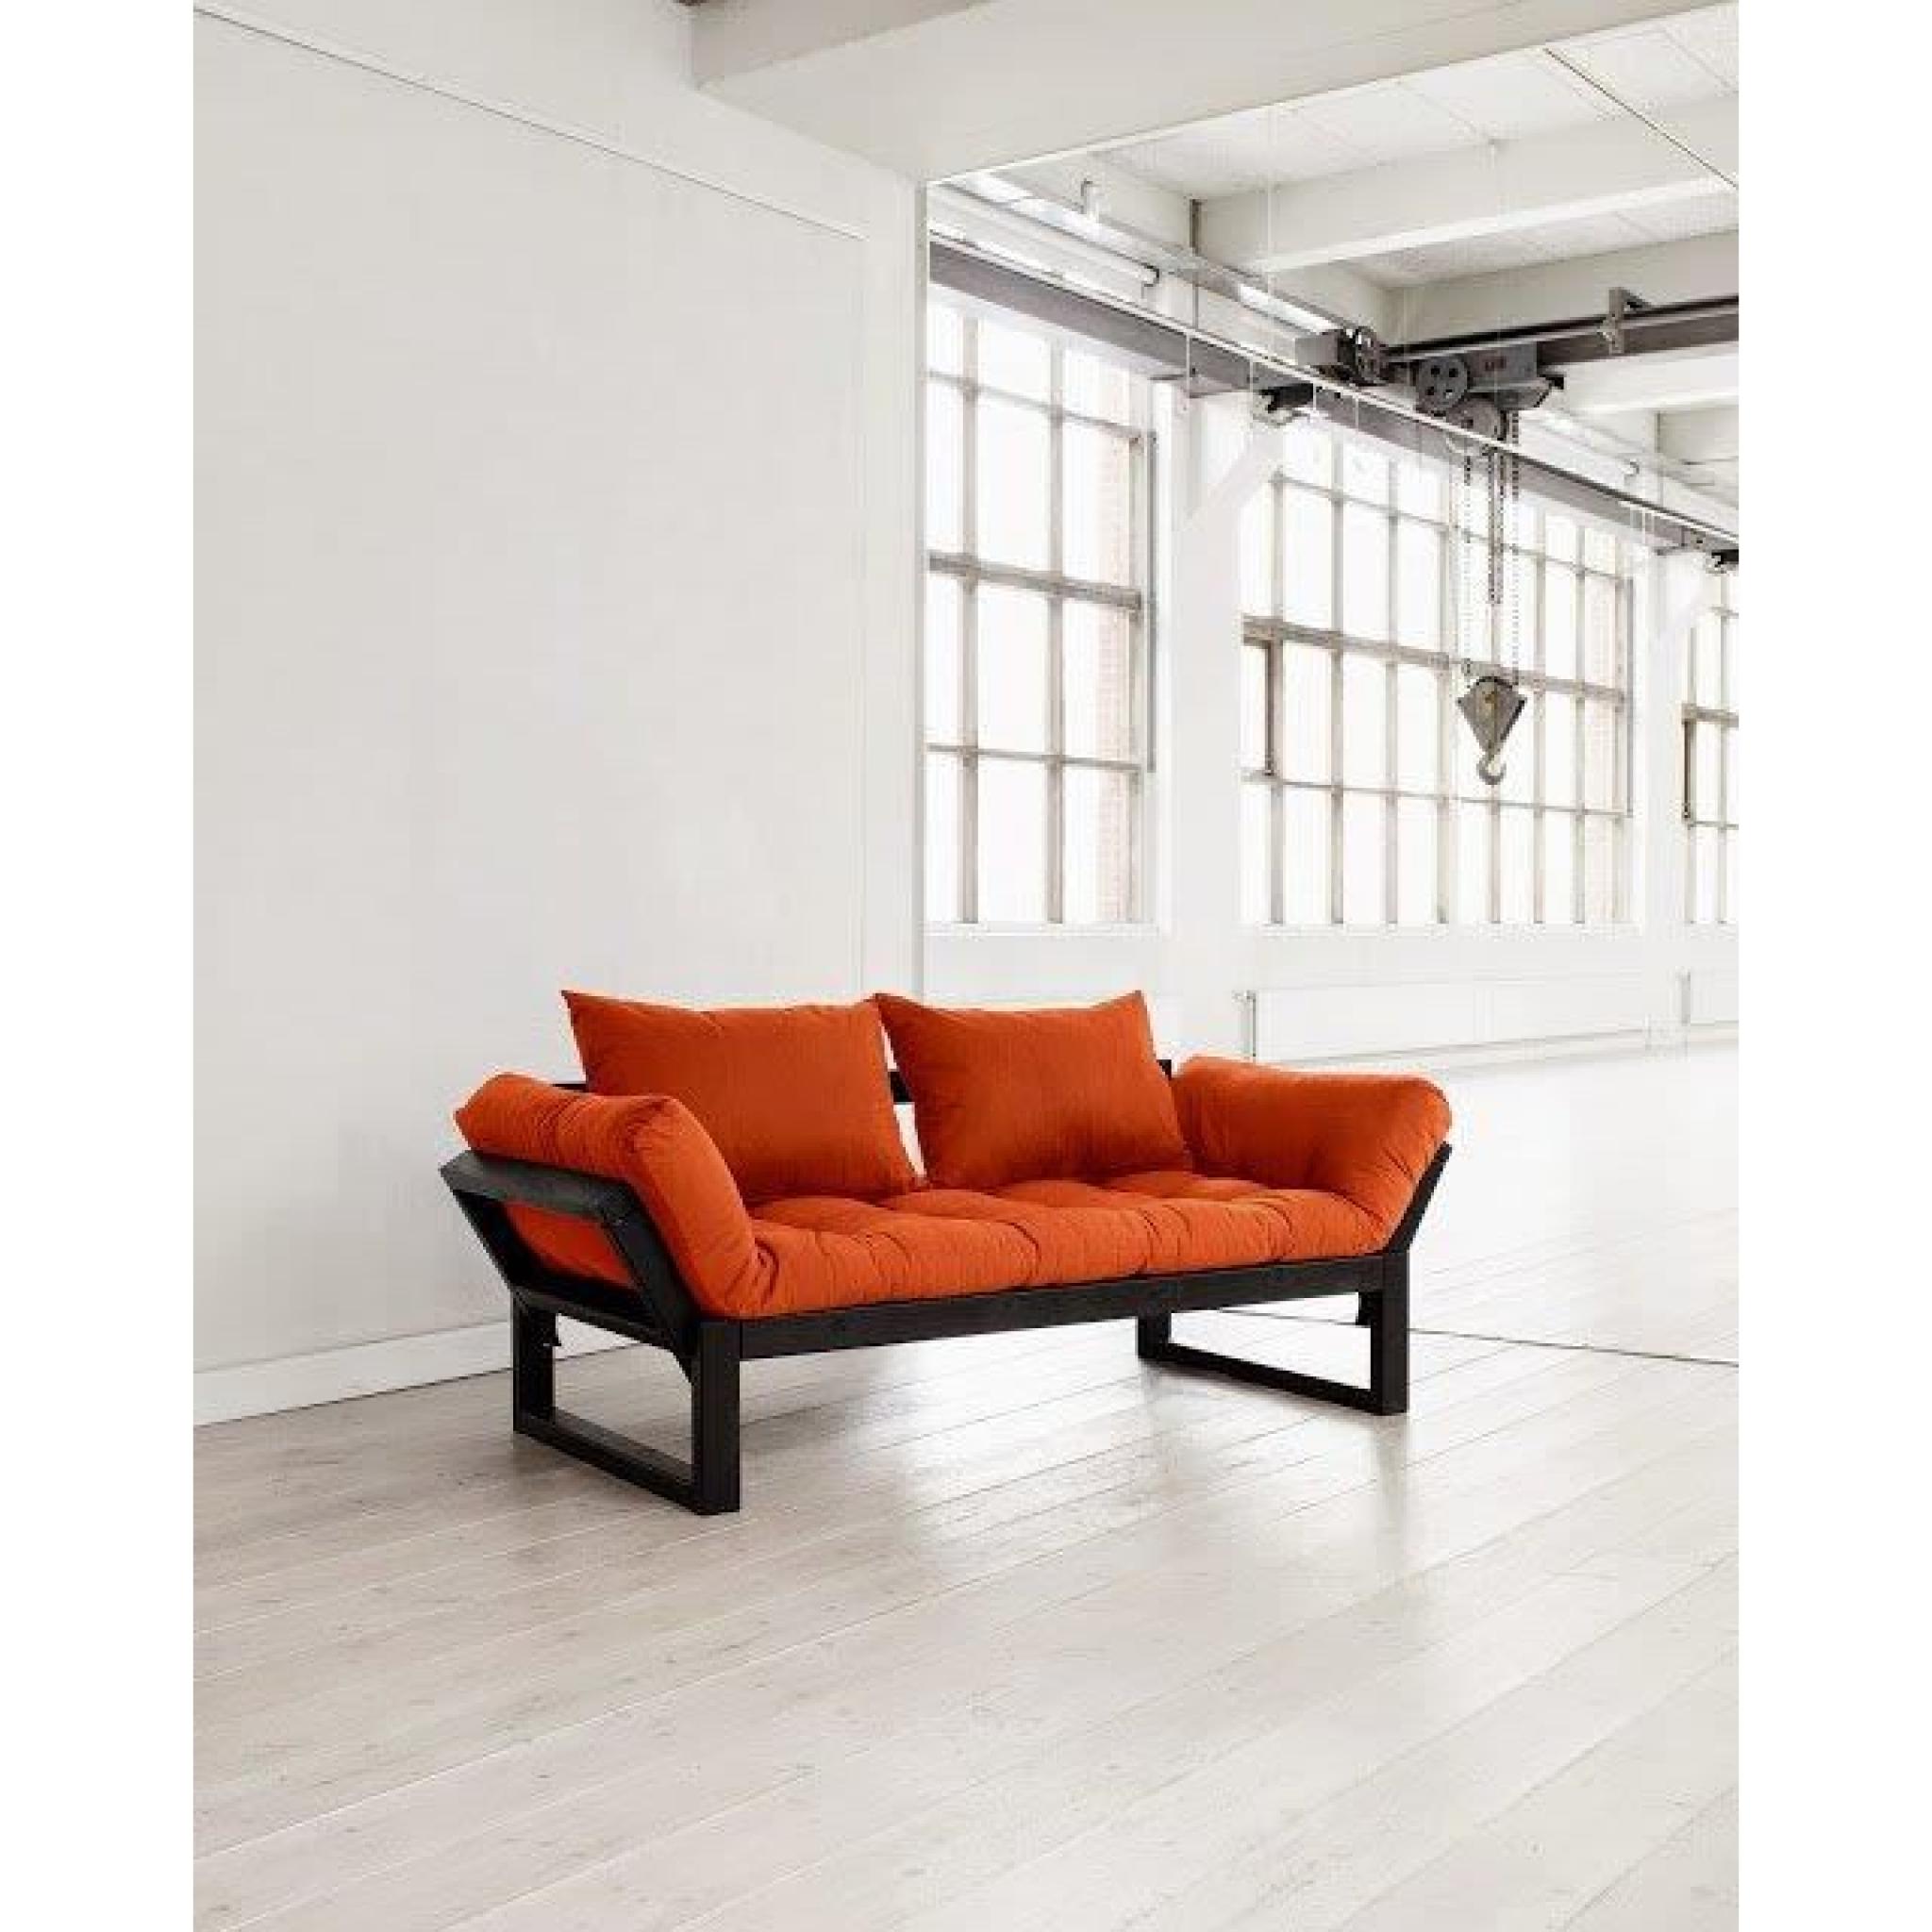 Banquette méridienne noire futon orange EDGE couchage 75*200cm pas cher